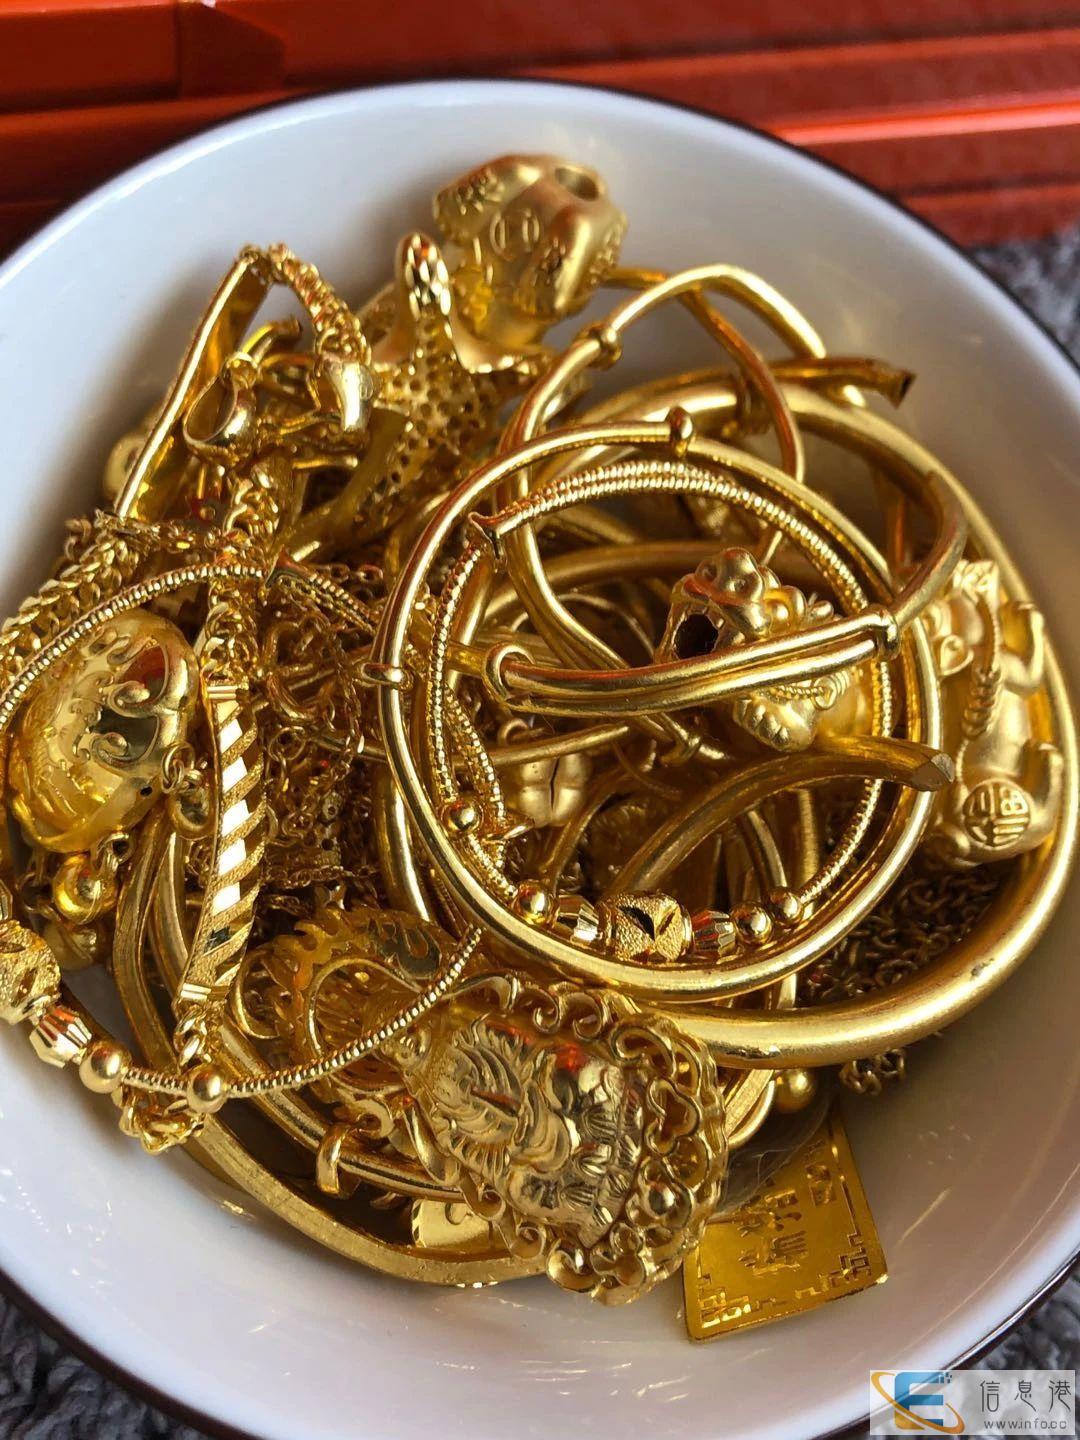 无锡里可以回收黄金 正规黄金首饰回收 实体店铺